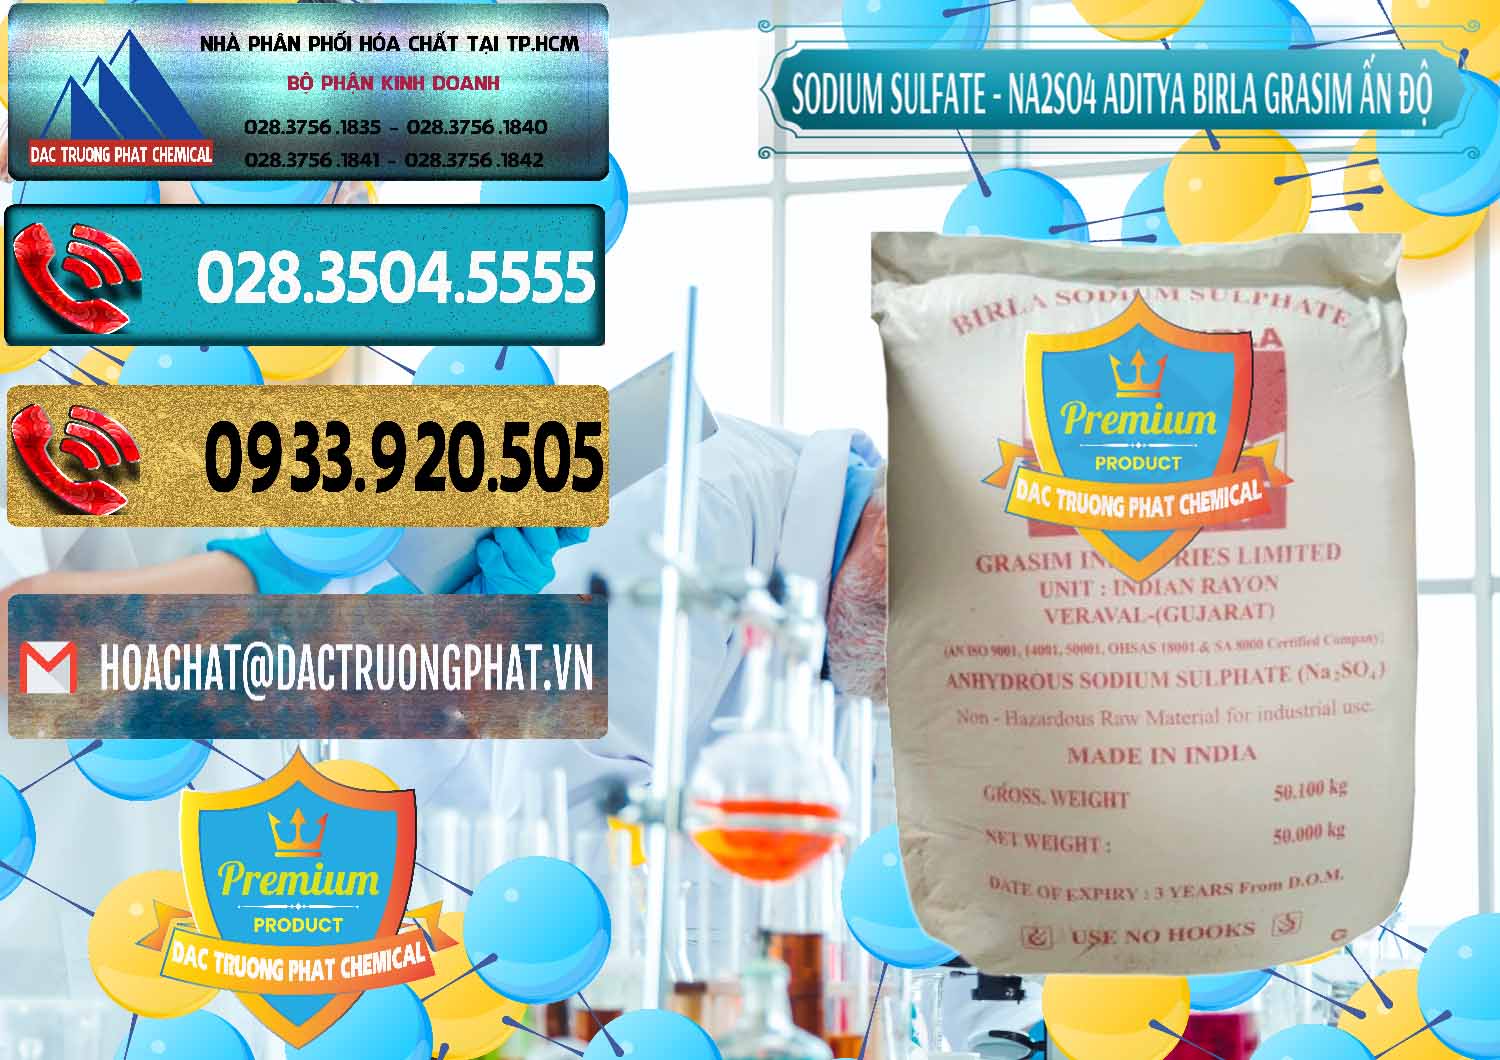 Cty phân phối ( bán ) Sodium Sulphate - Muối Sunfat Na2SO4 Grasim Ấn Độ India - 0356 - Nơi bán ( phân phối ) hóa chất tại TP.HCM - hoachatdetnhuom.com